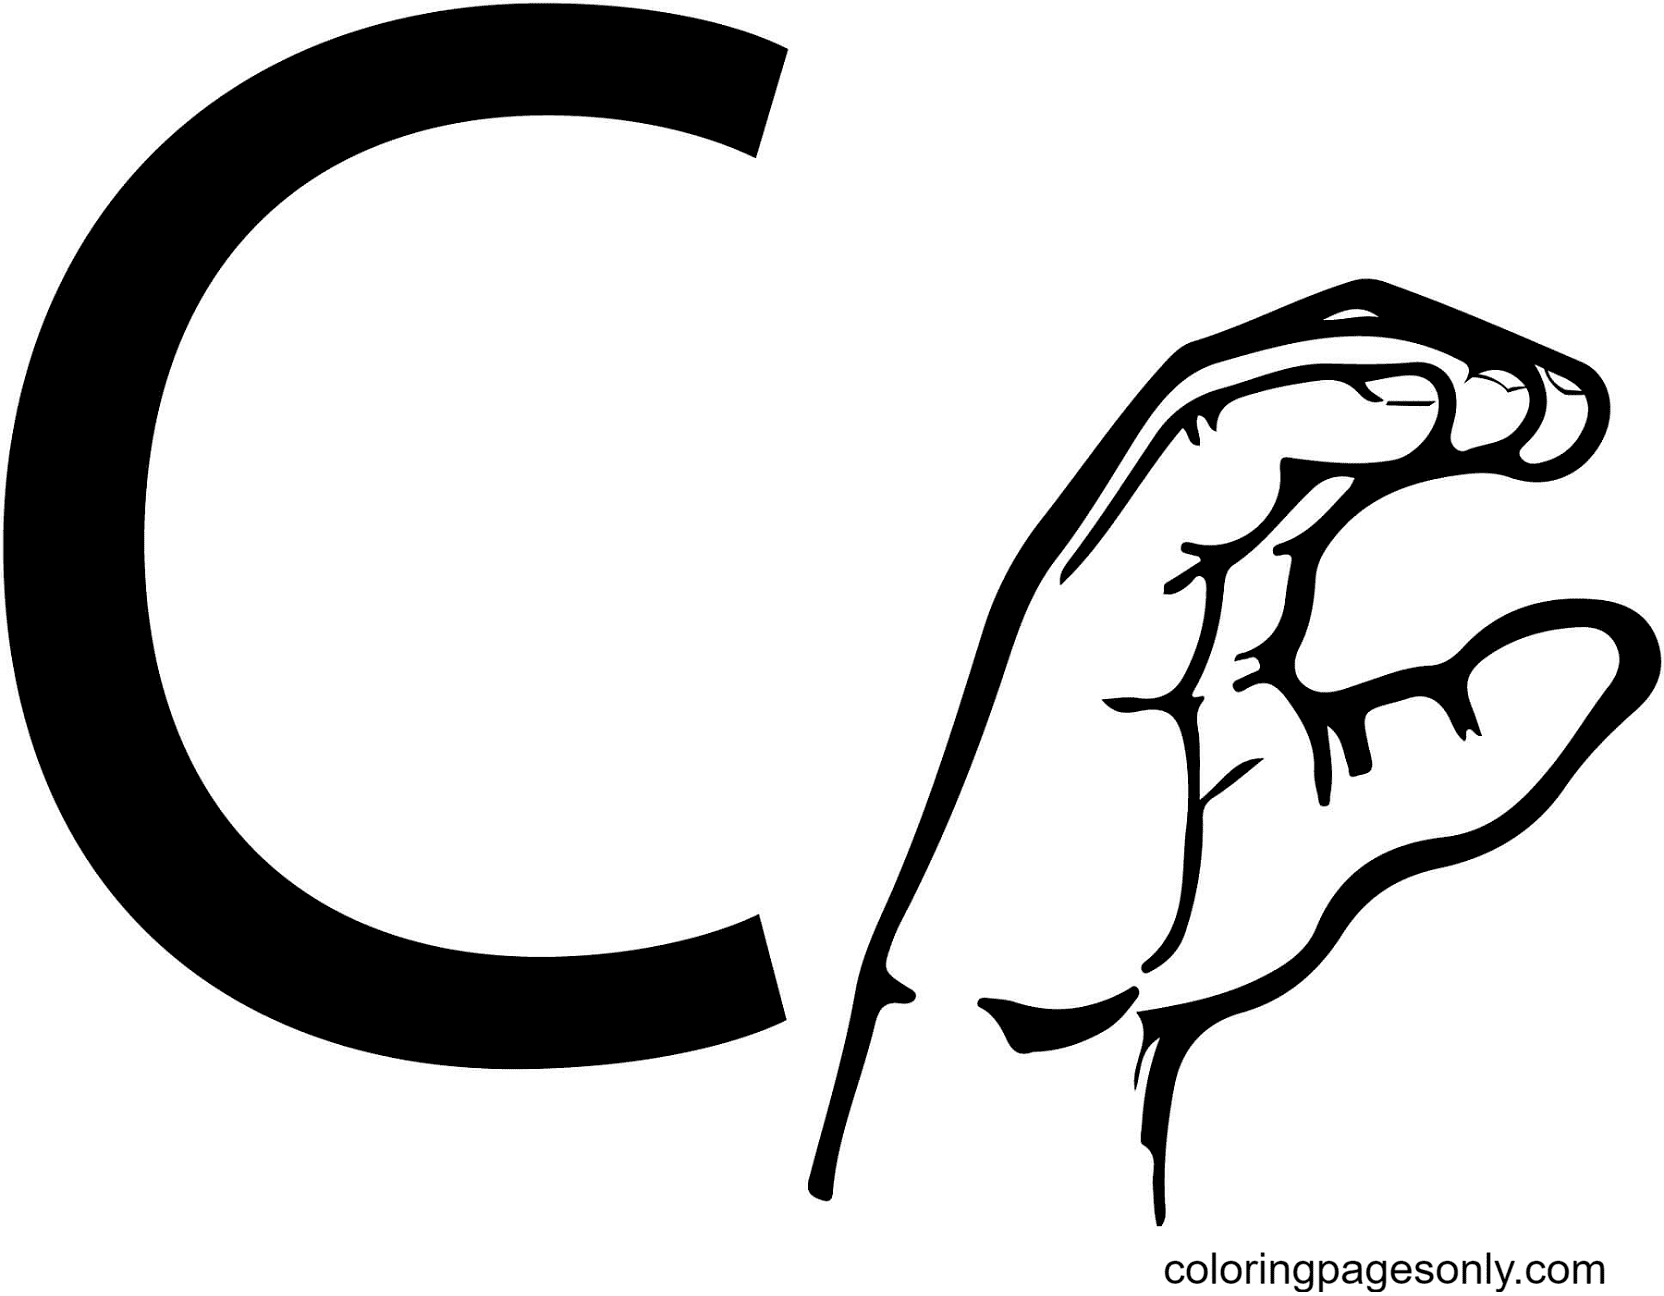 ASL-Gebärdensprache Buchstabe C aus Buchstabe C